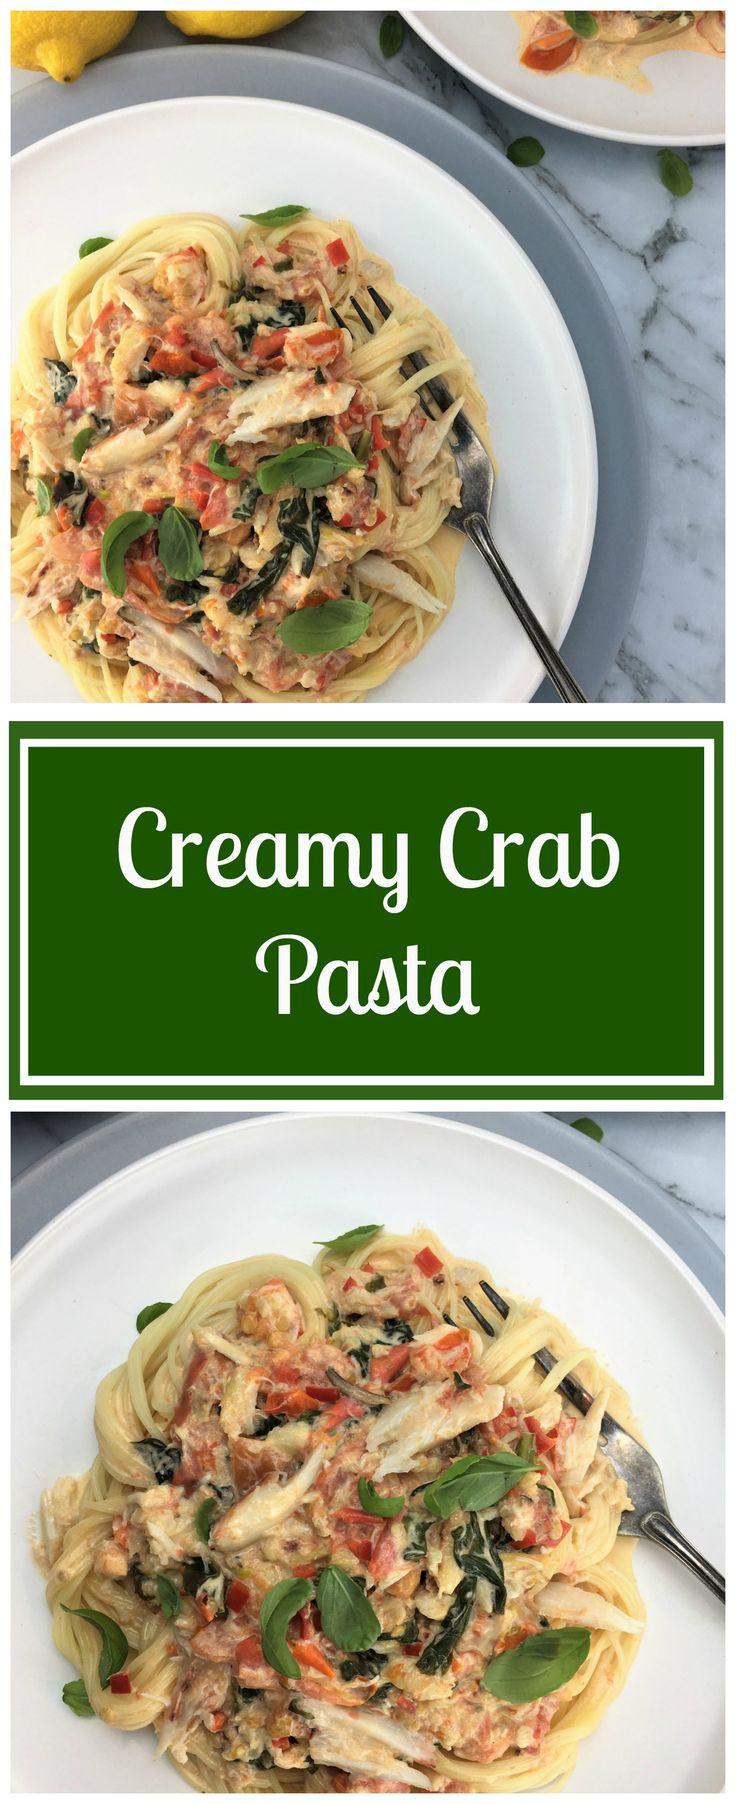 زفاف - Creamy Crab Pasta With Chilli And Basil